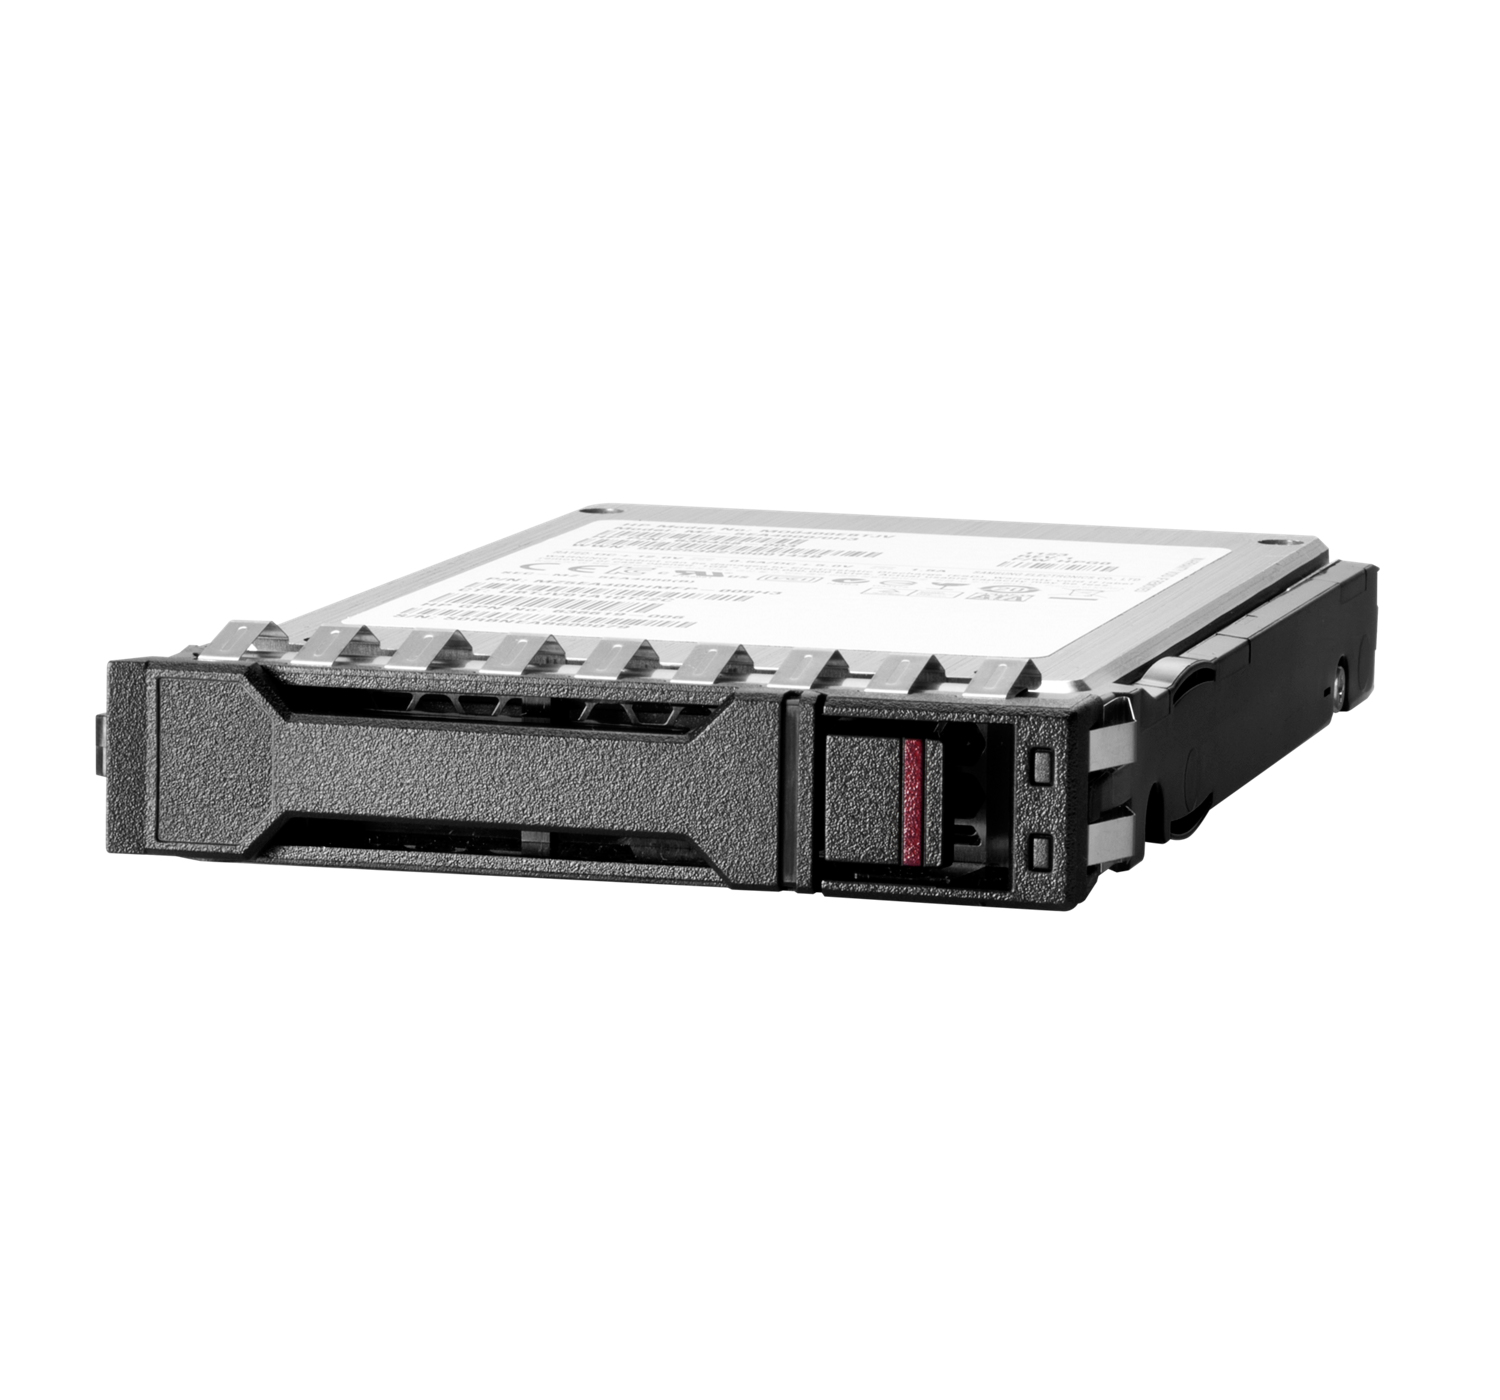 HPE SSD - verschlüsselt - 1.92 TB - Hot-Swap - 2.5" SFF (6.4 cm SFF)